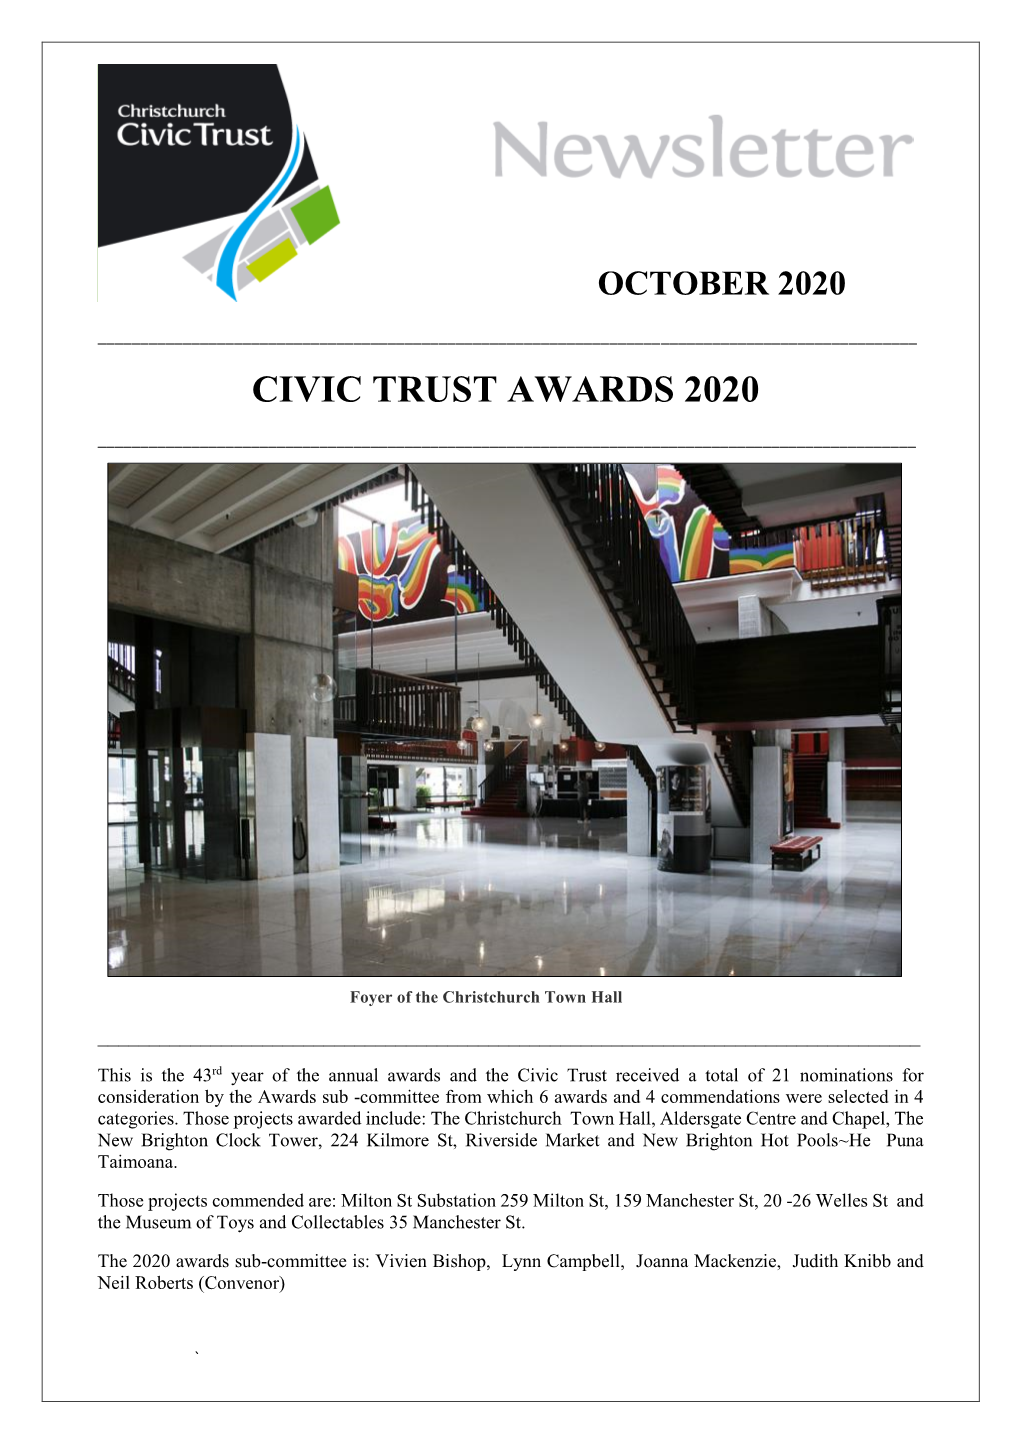 Civic Trust Awards 2020